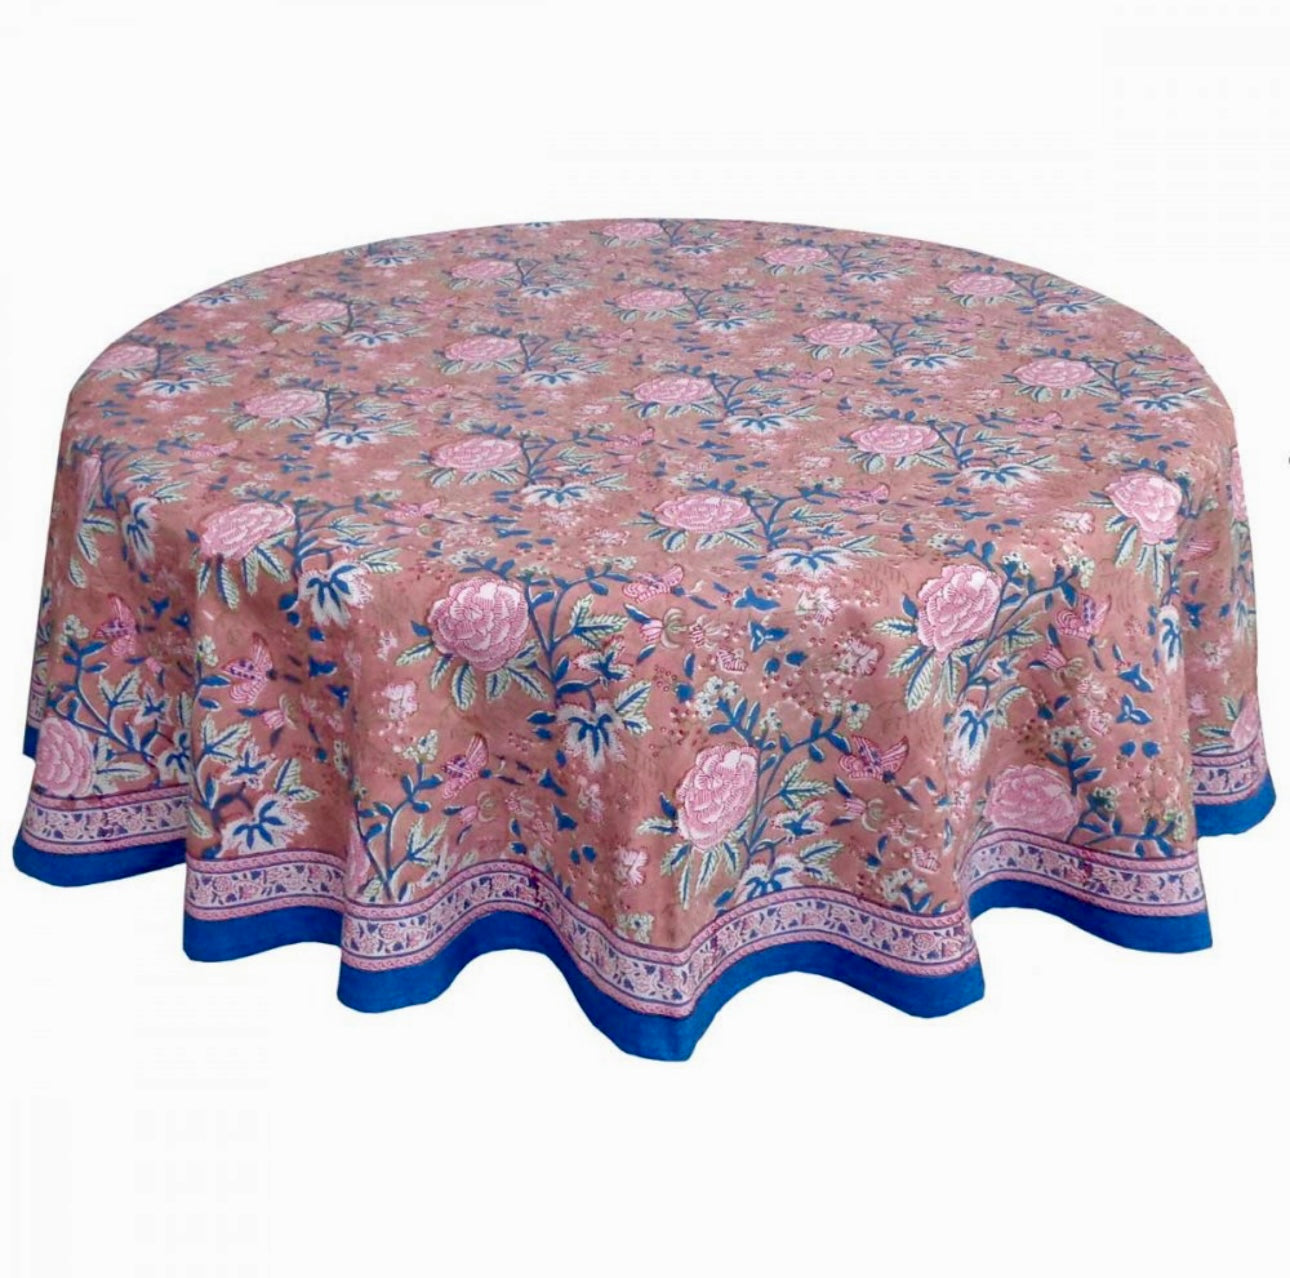 Wild Bazaar Dusky Rose Tablecloth